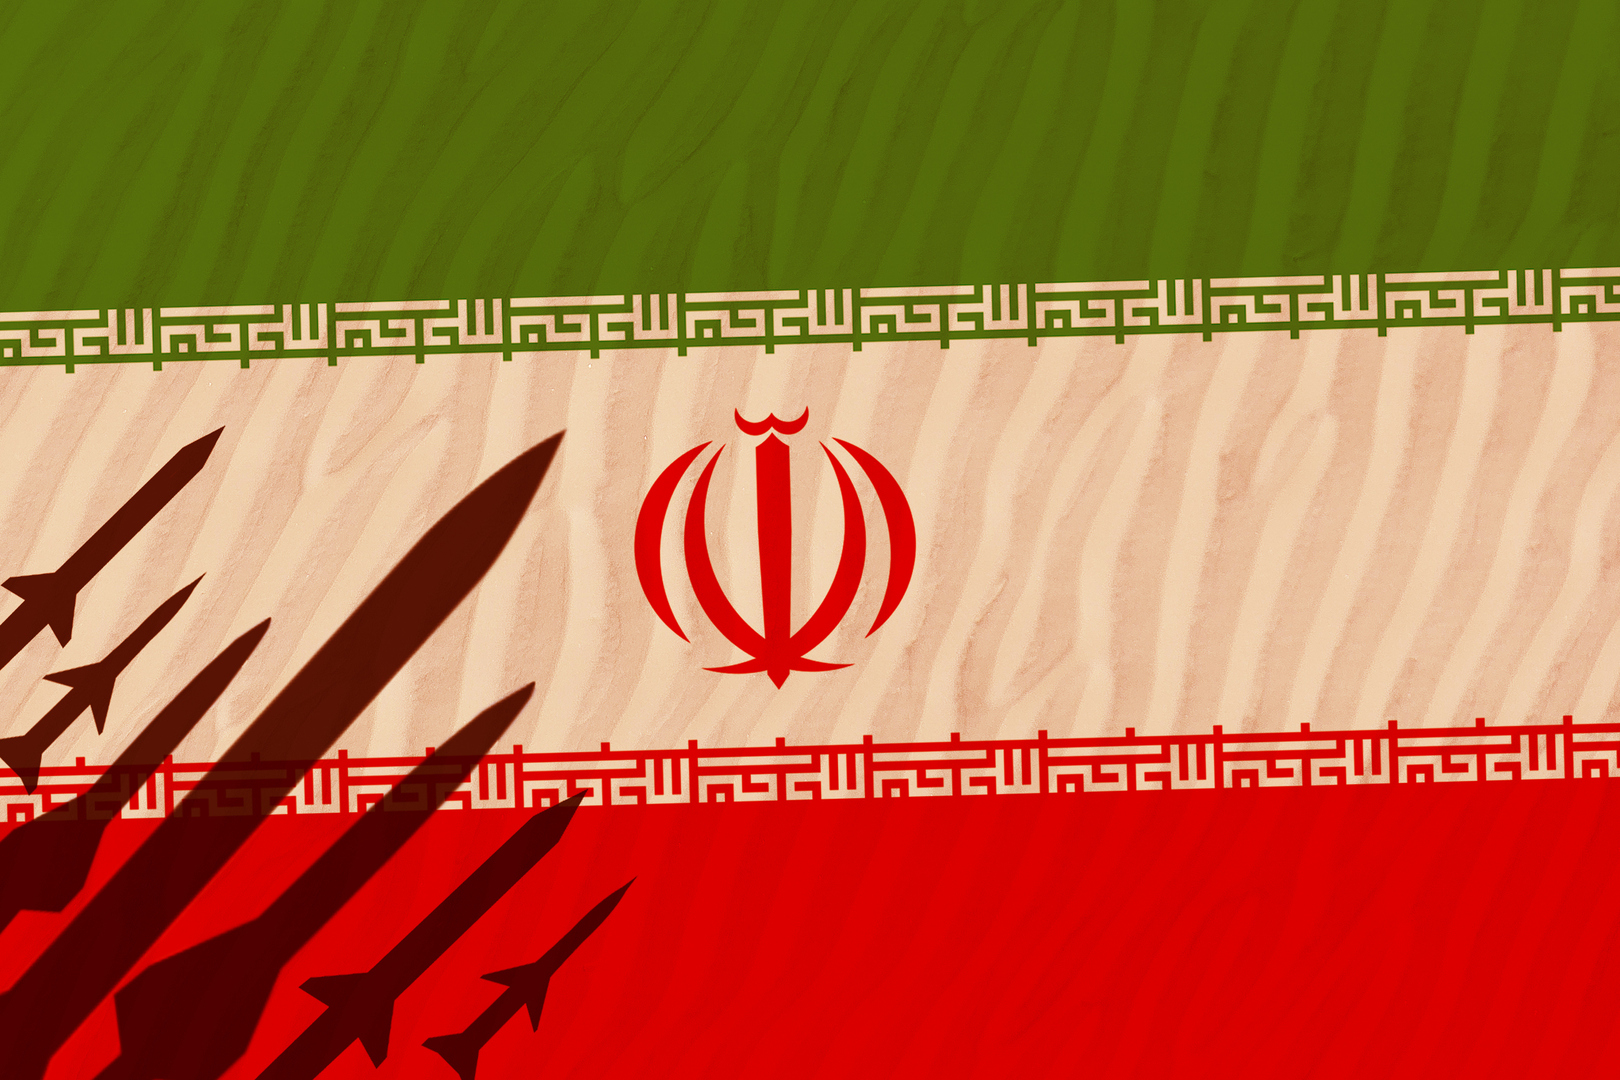 إيران.. رئيس هيئة الأركان المشتركة يفصح عن مضمون رسالة وجهتها طهران إلى واشنطن 